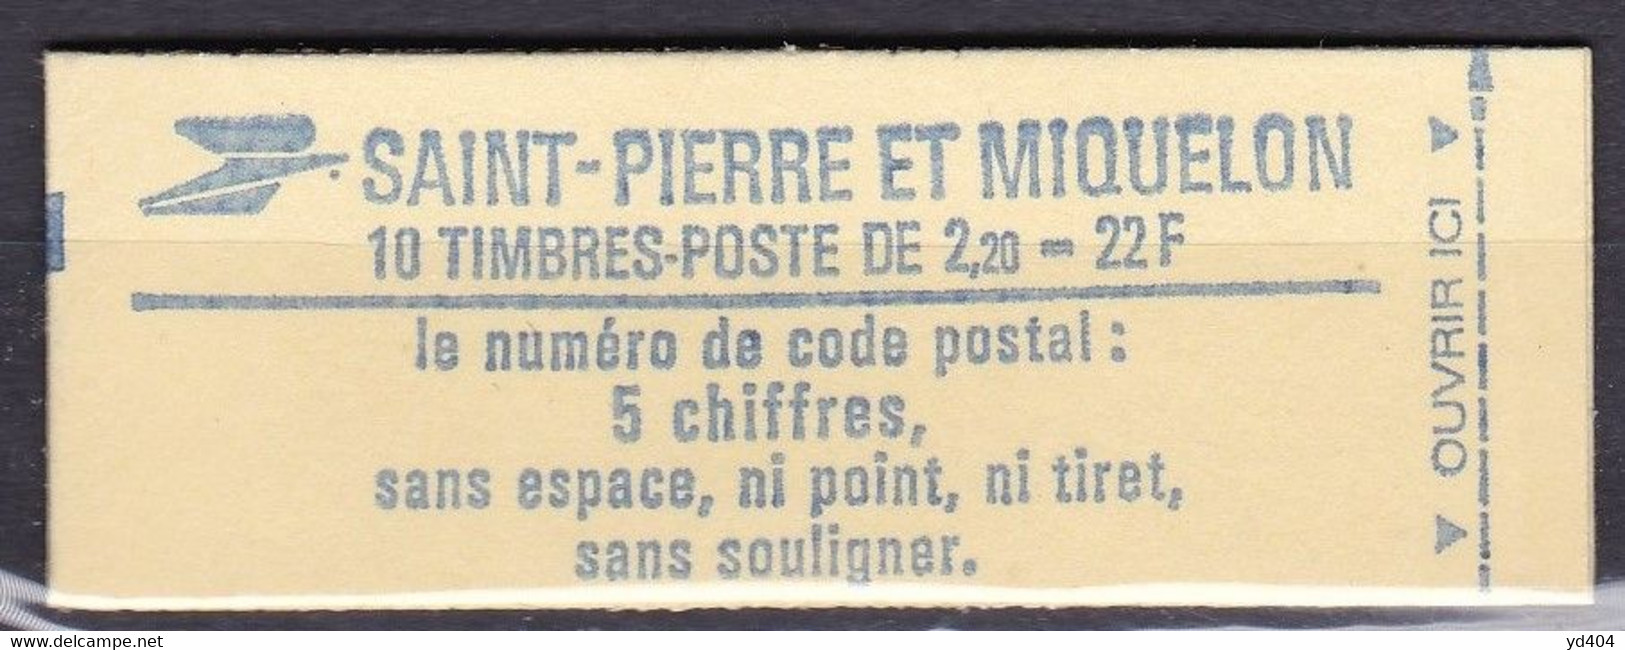 PM-710 – ST PIERRE & MIQUELON – BOOKLETS - 1986 – Liberté De Gandon – Y&T # C464a MNH 12,50 € - Cuadernillos